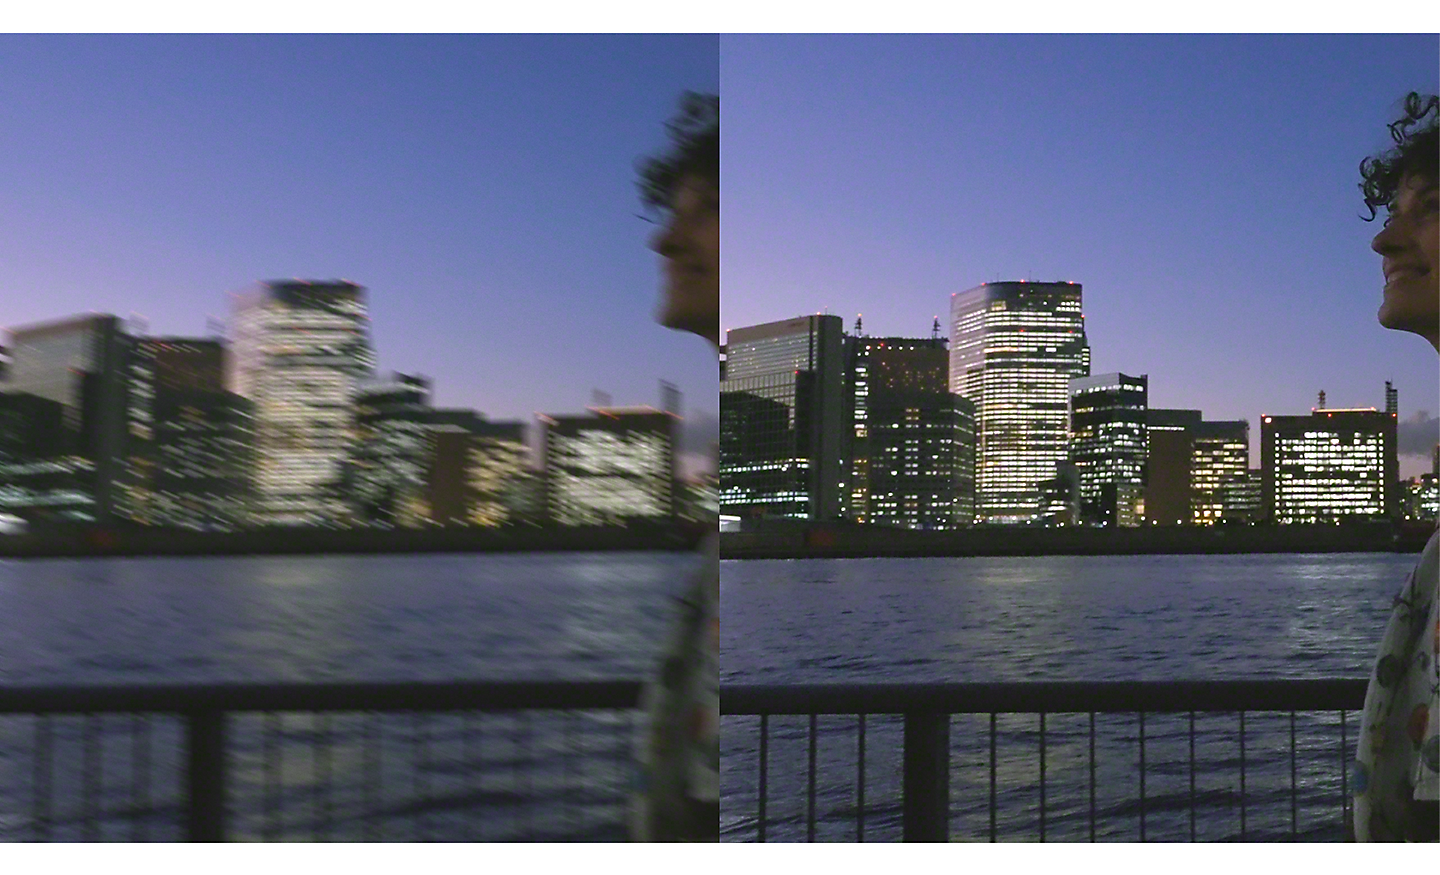 Imagen dual de un paisaje urbano por la noche. La imagen de la izquierda está borrosa y la de la derecha es nítida.